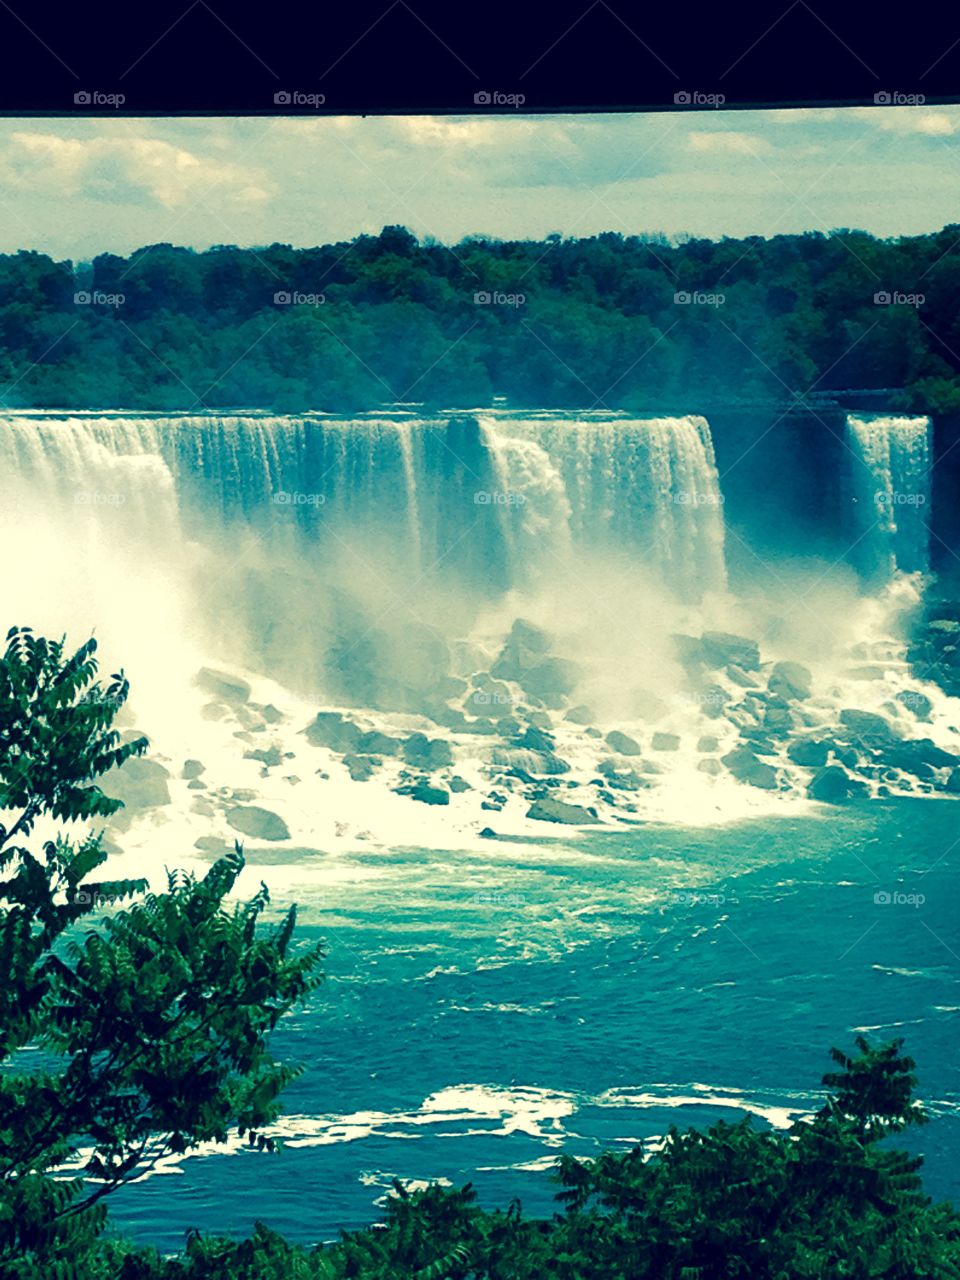 The Falls at Niagara